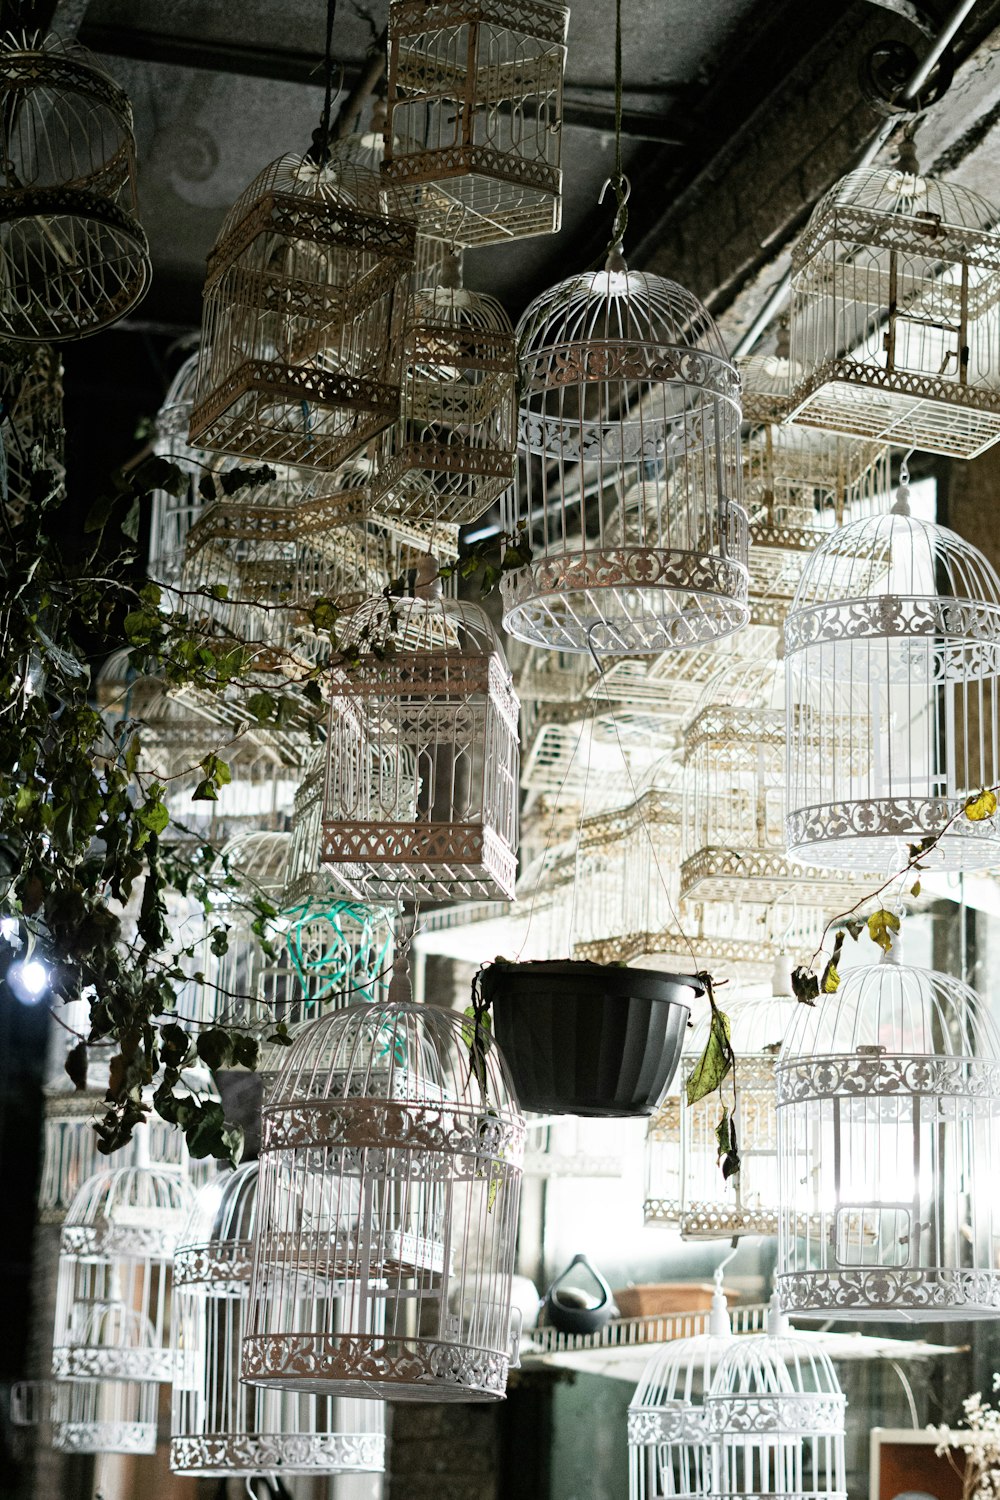 Lote de jaula de pájaros de metal blanco dentro de una habitación iluminada